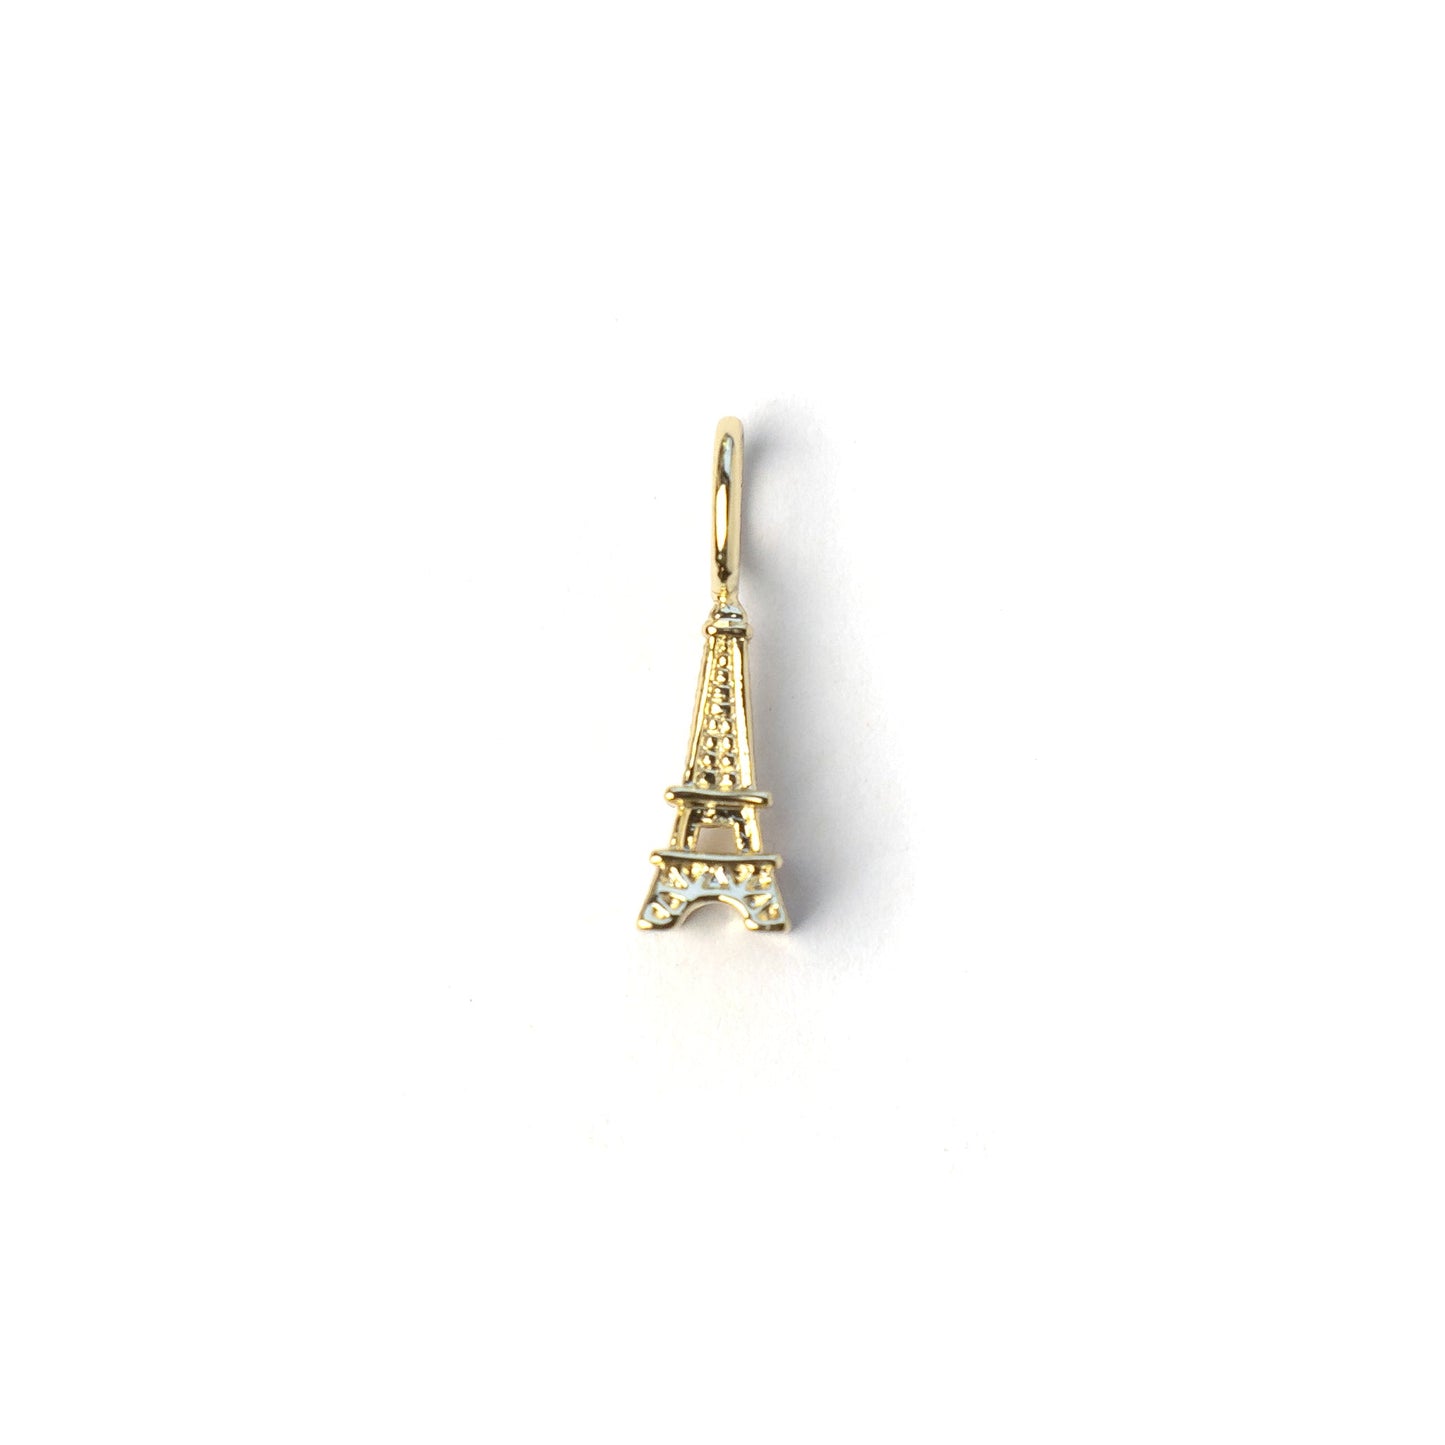 Eiffel Tower Charm